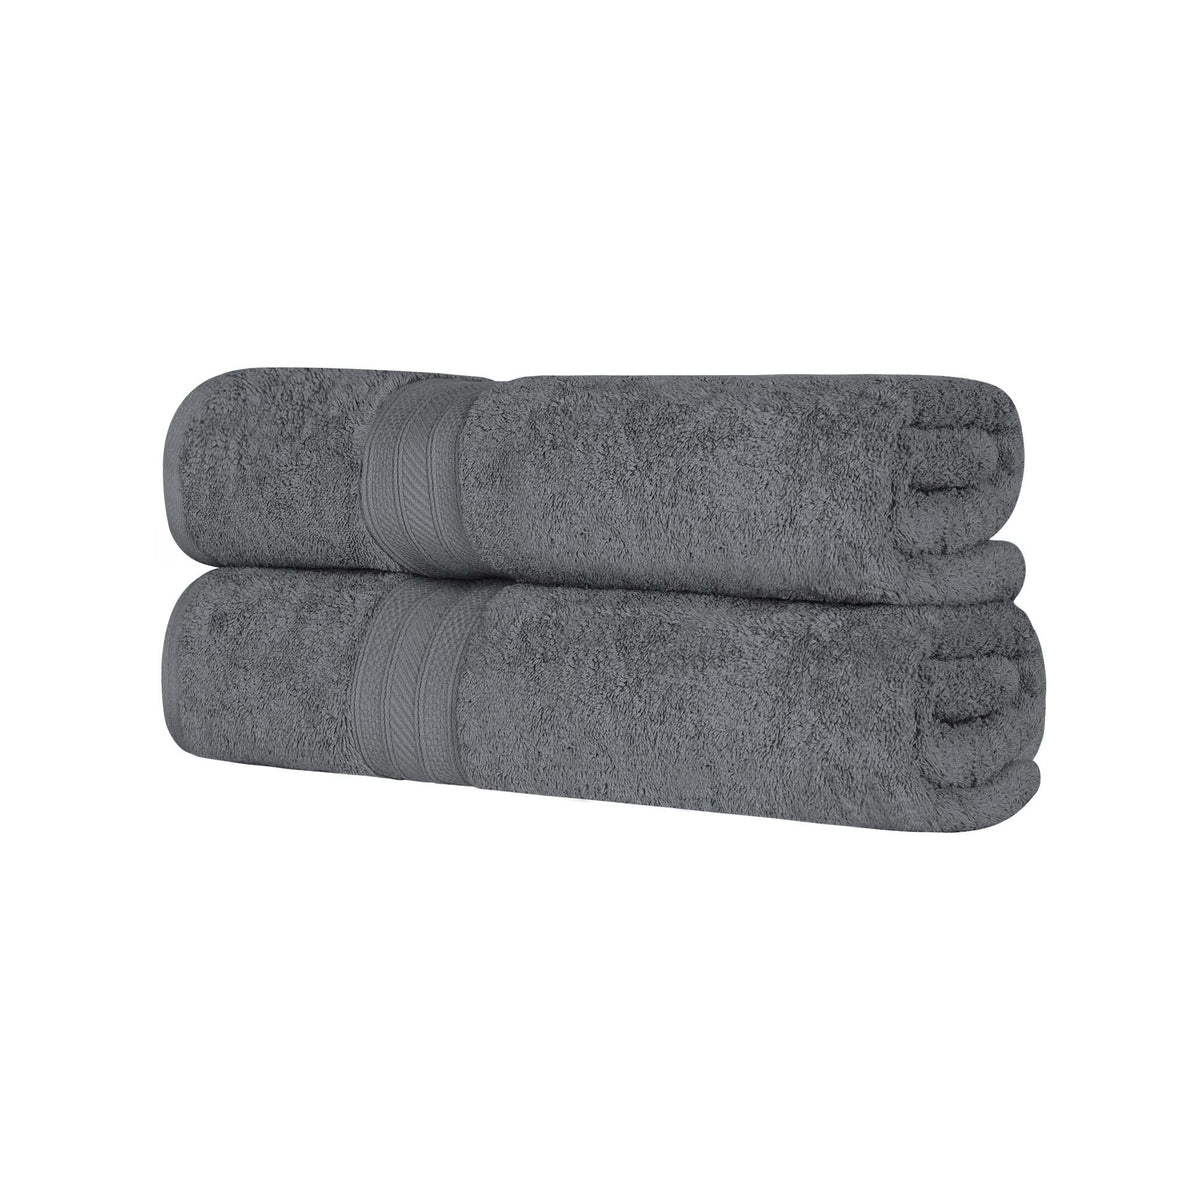 Cotton Heavyweight Absorbent Plush 2 Piece Bath Sheet Set - Gray